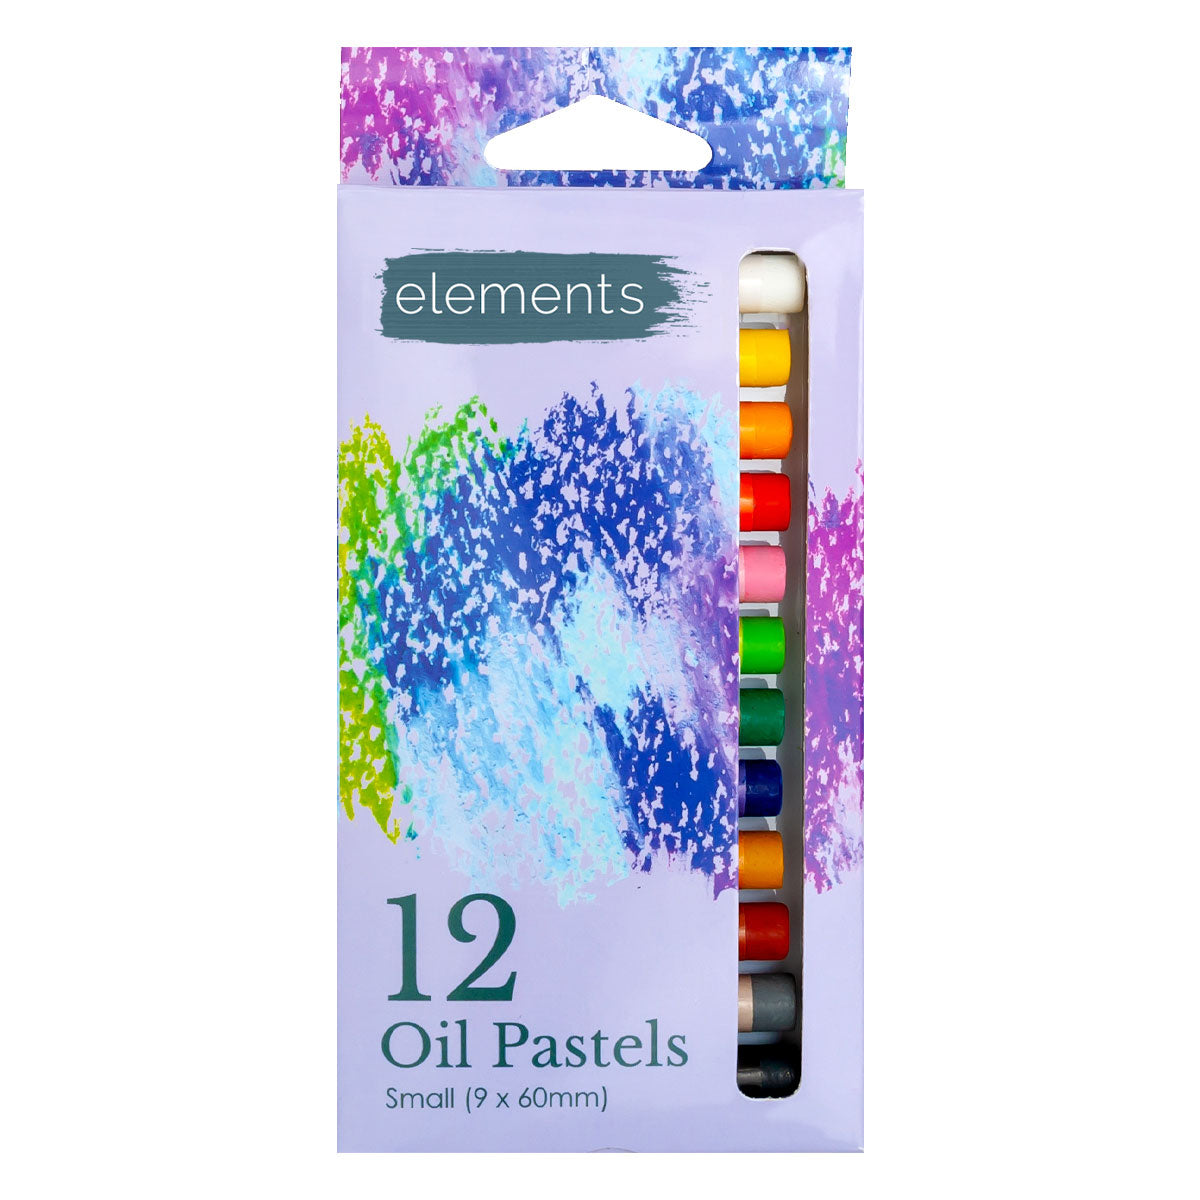 Elements Slim Pastels à l’huile 12 Pack